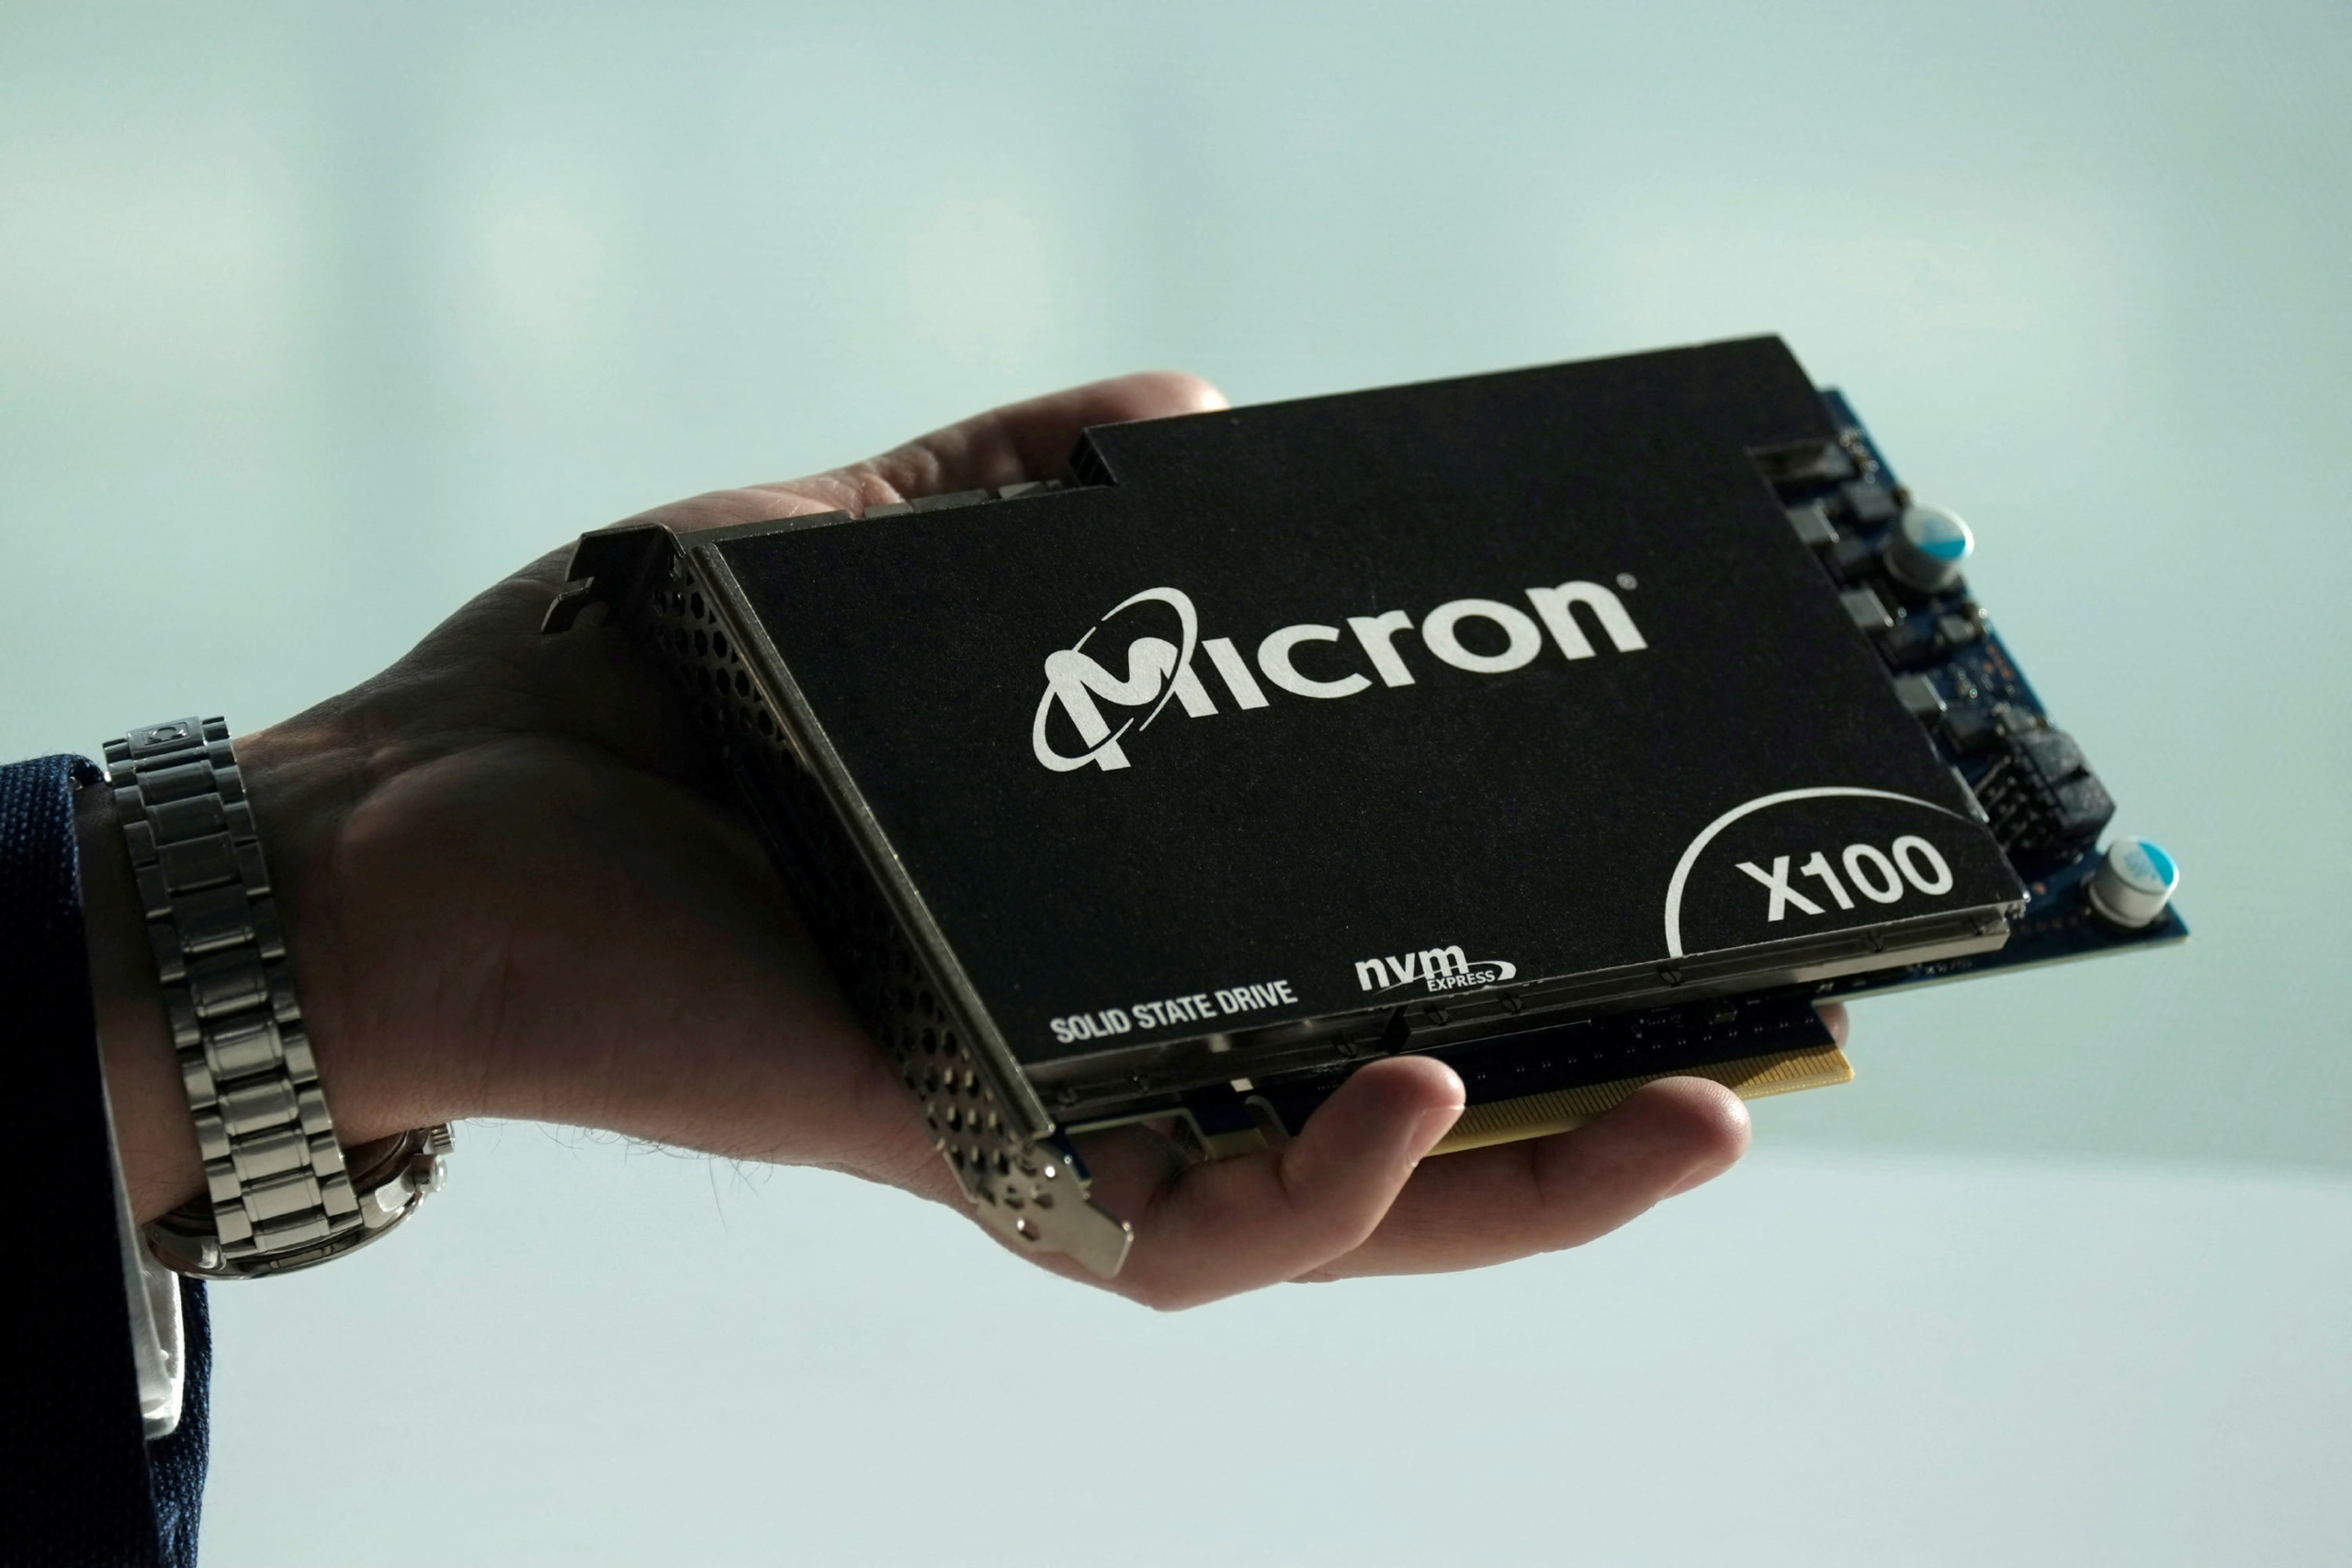 Ổ cứng thể rắn của Micron Technology dành cho các khách hàng của trung tâm dữ liệu tại một sự kiện ra mắt sản phẩm ở San Francisco ngày 24/10/2019. (Ảnh: Stephen Nellis/Reuters)